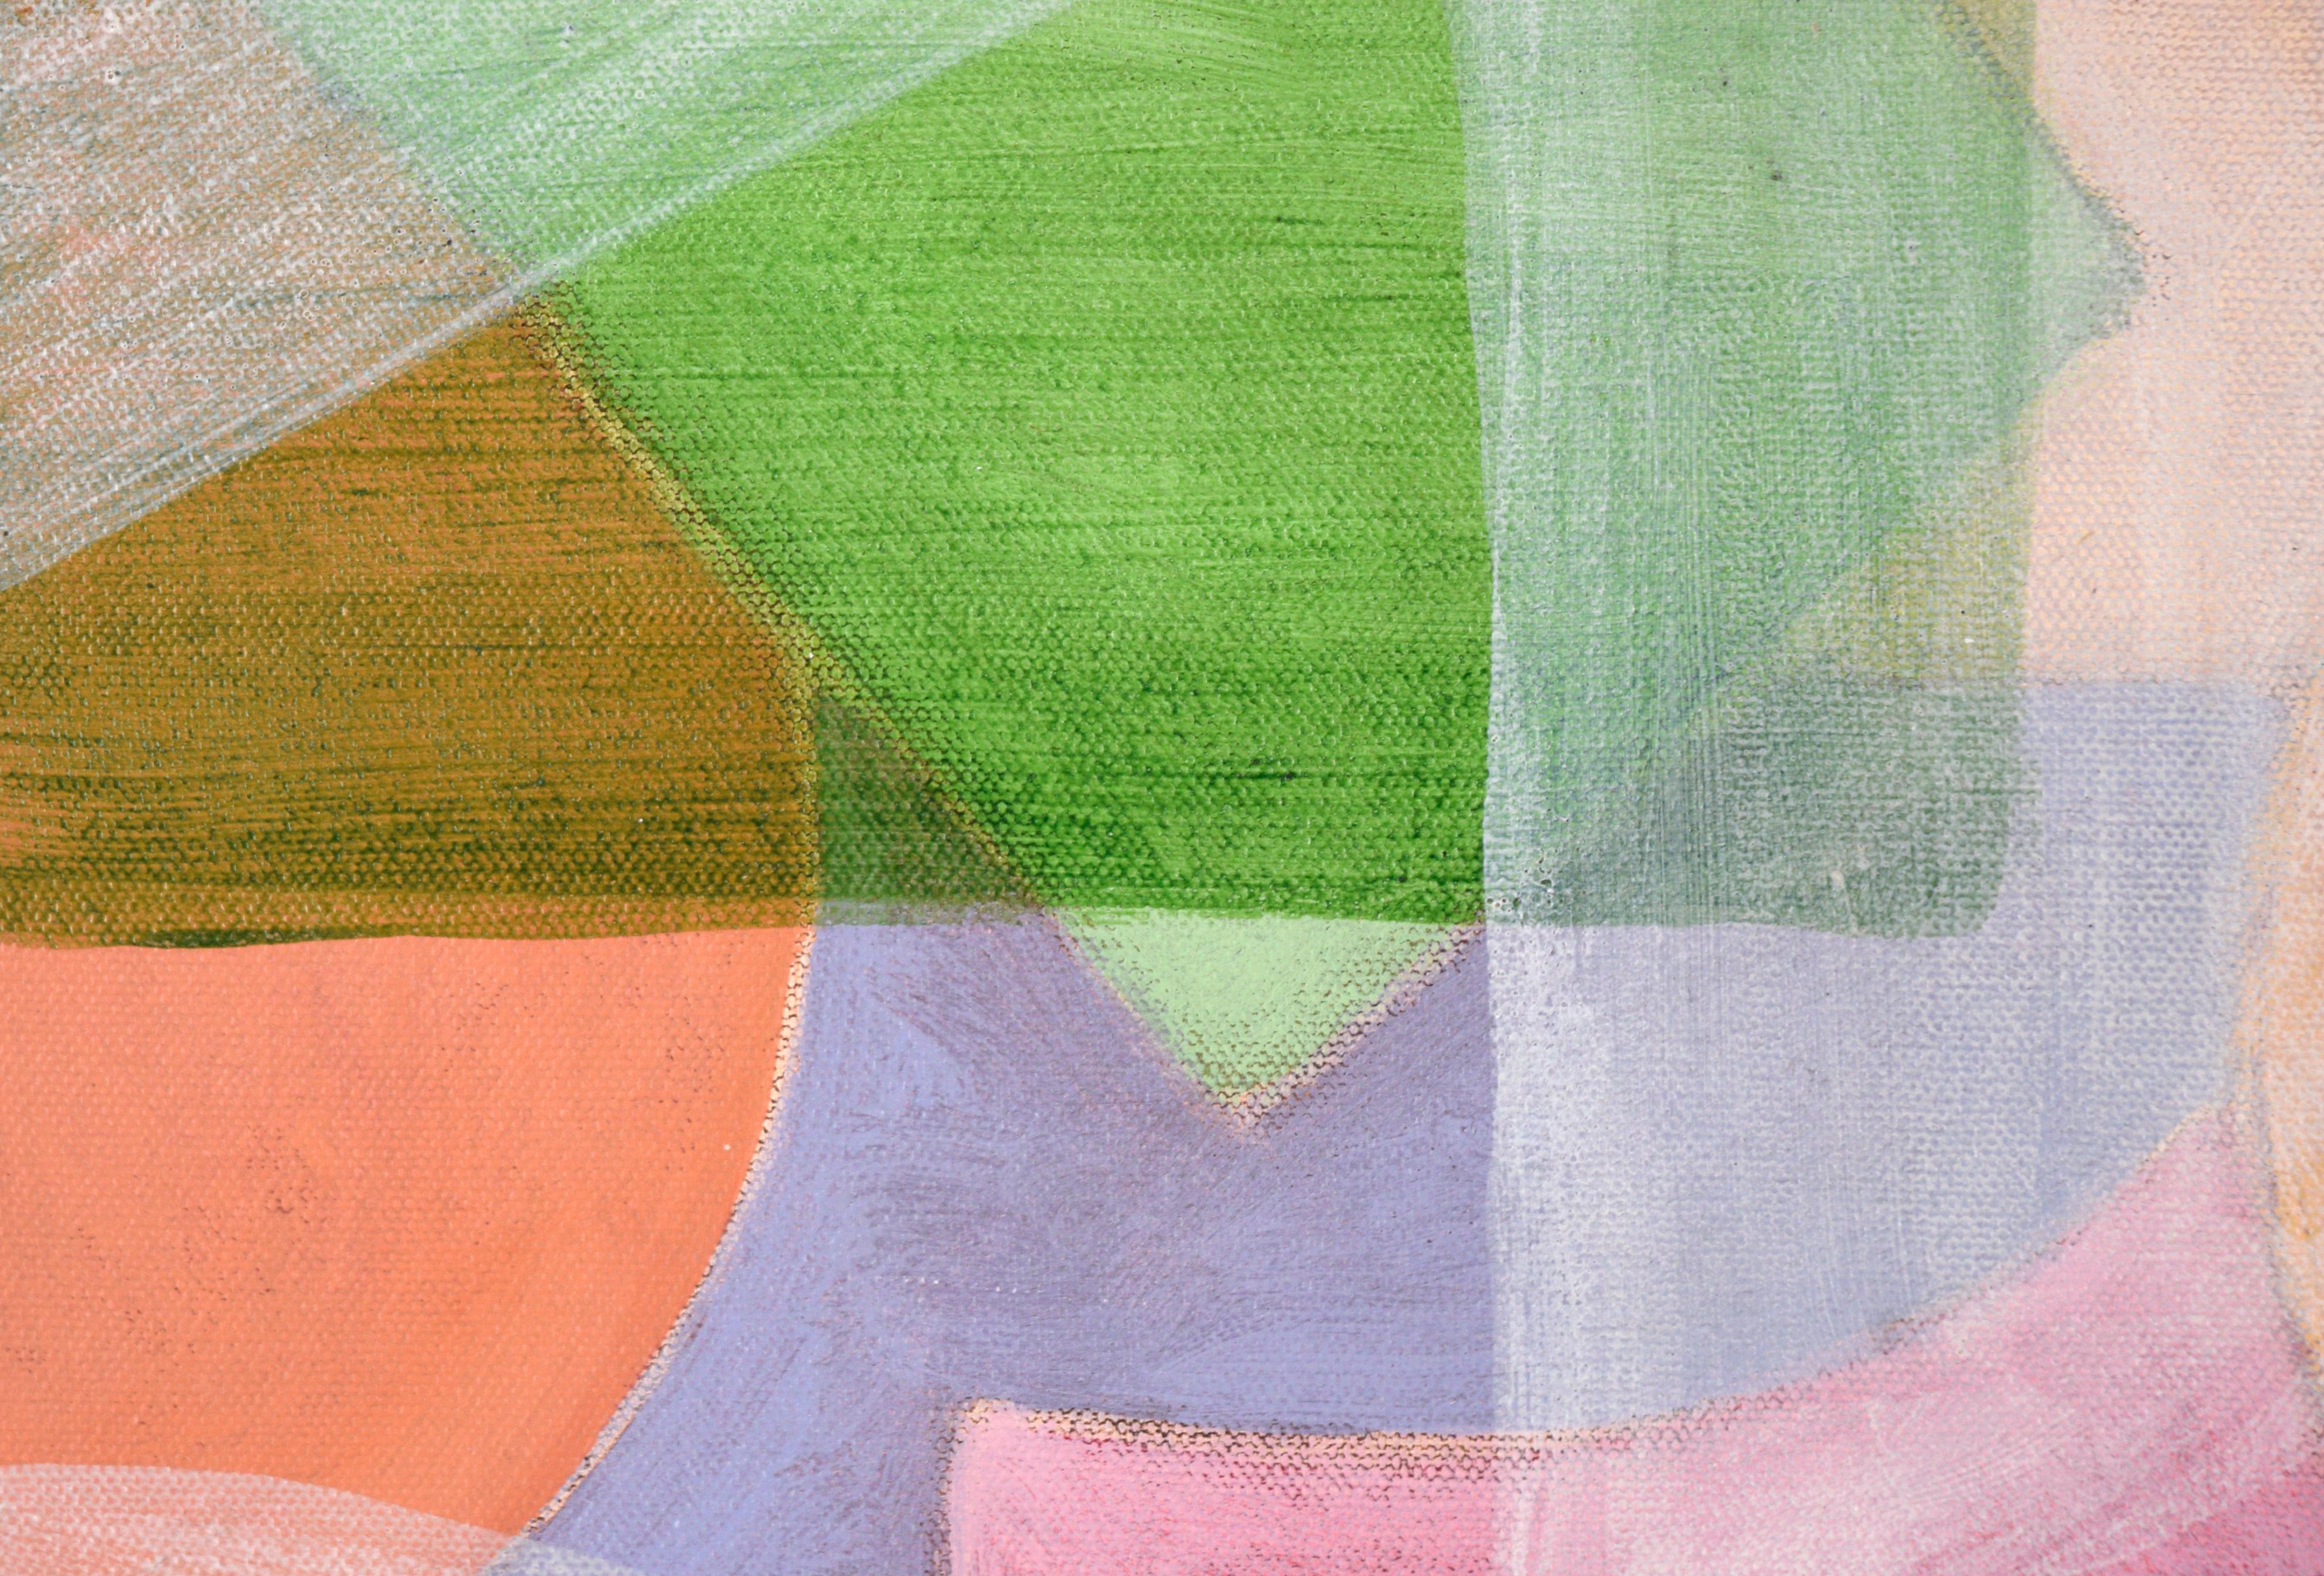 « Abstract Morning Light », composition géométrique en acrylique sur toile - Painting de Rod Norman